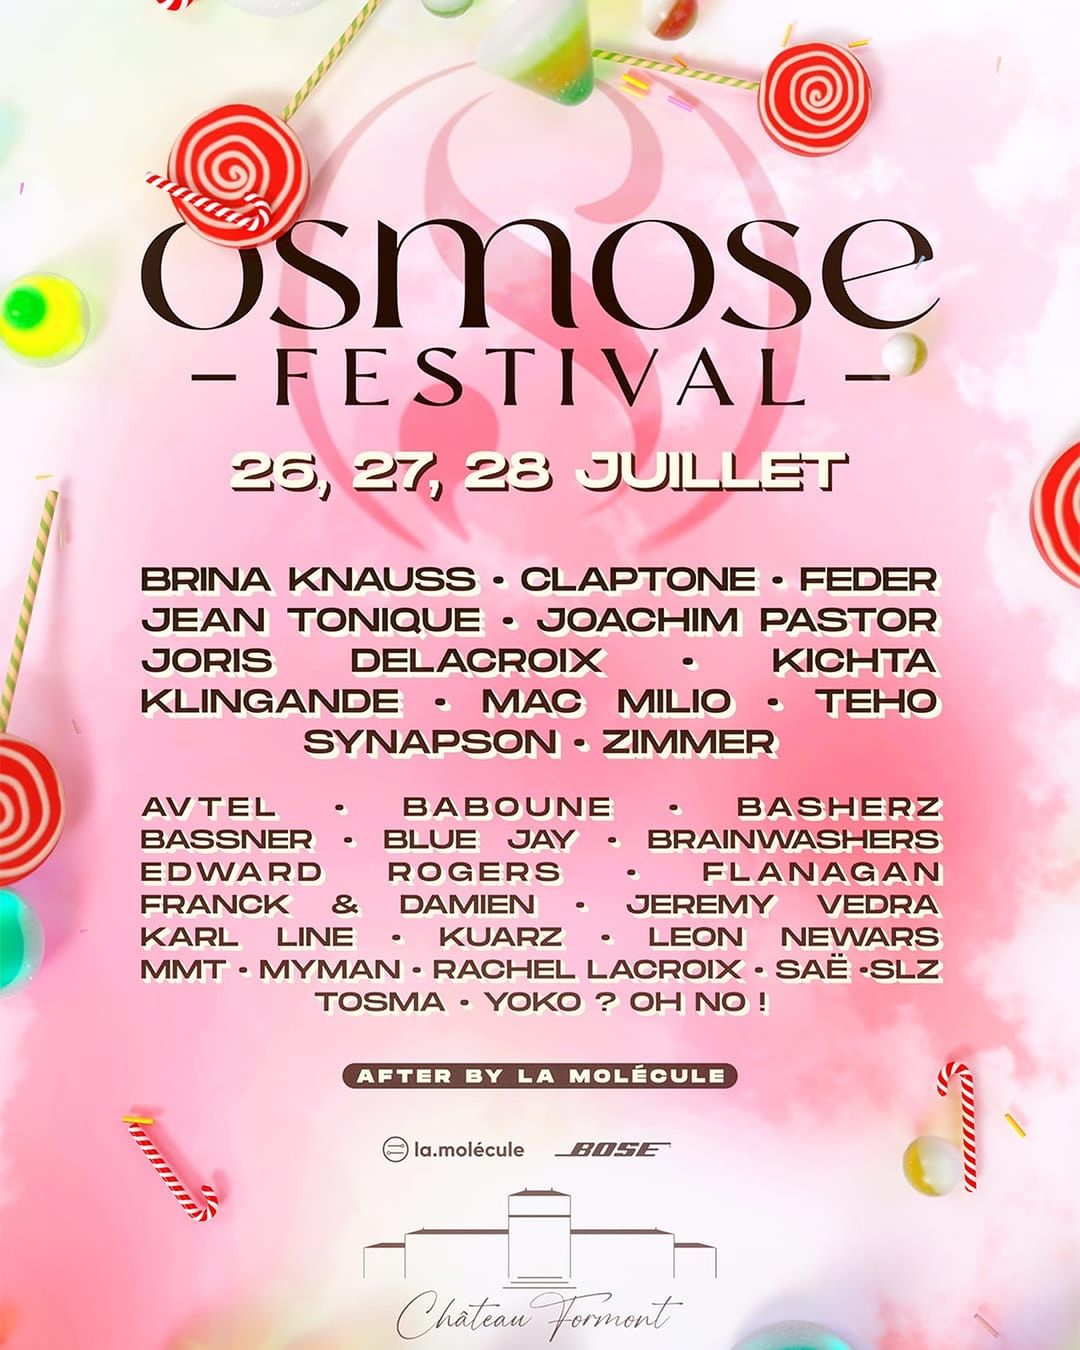 L'osmose festival, le festival a ne pas manquer cet été ! 2